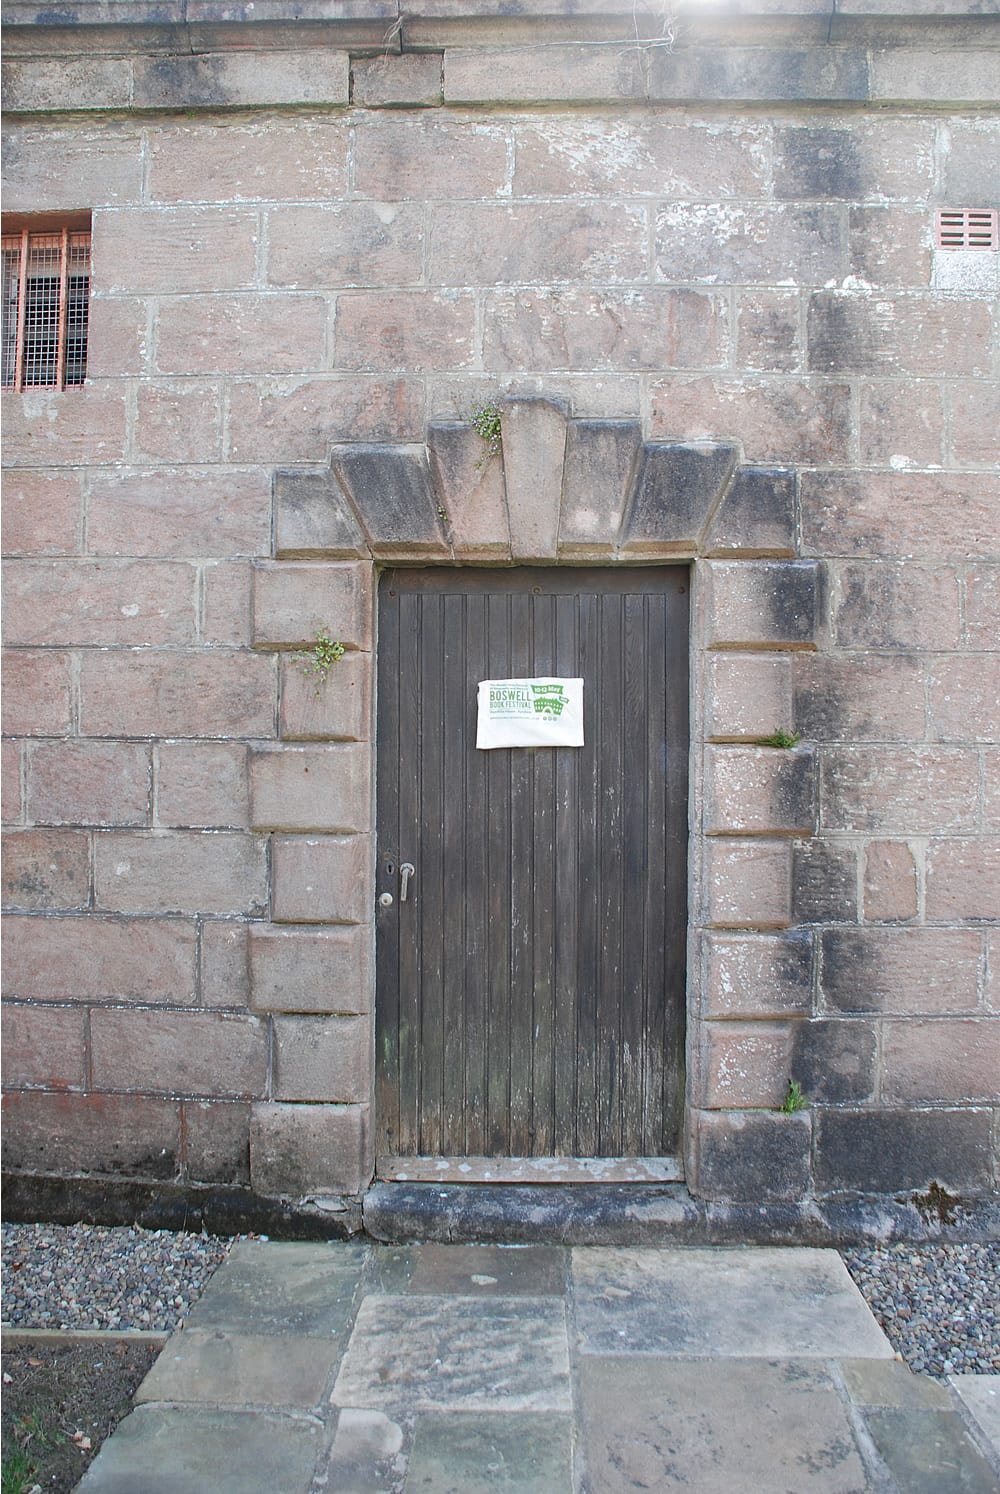 The front door to the mausoleum